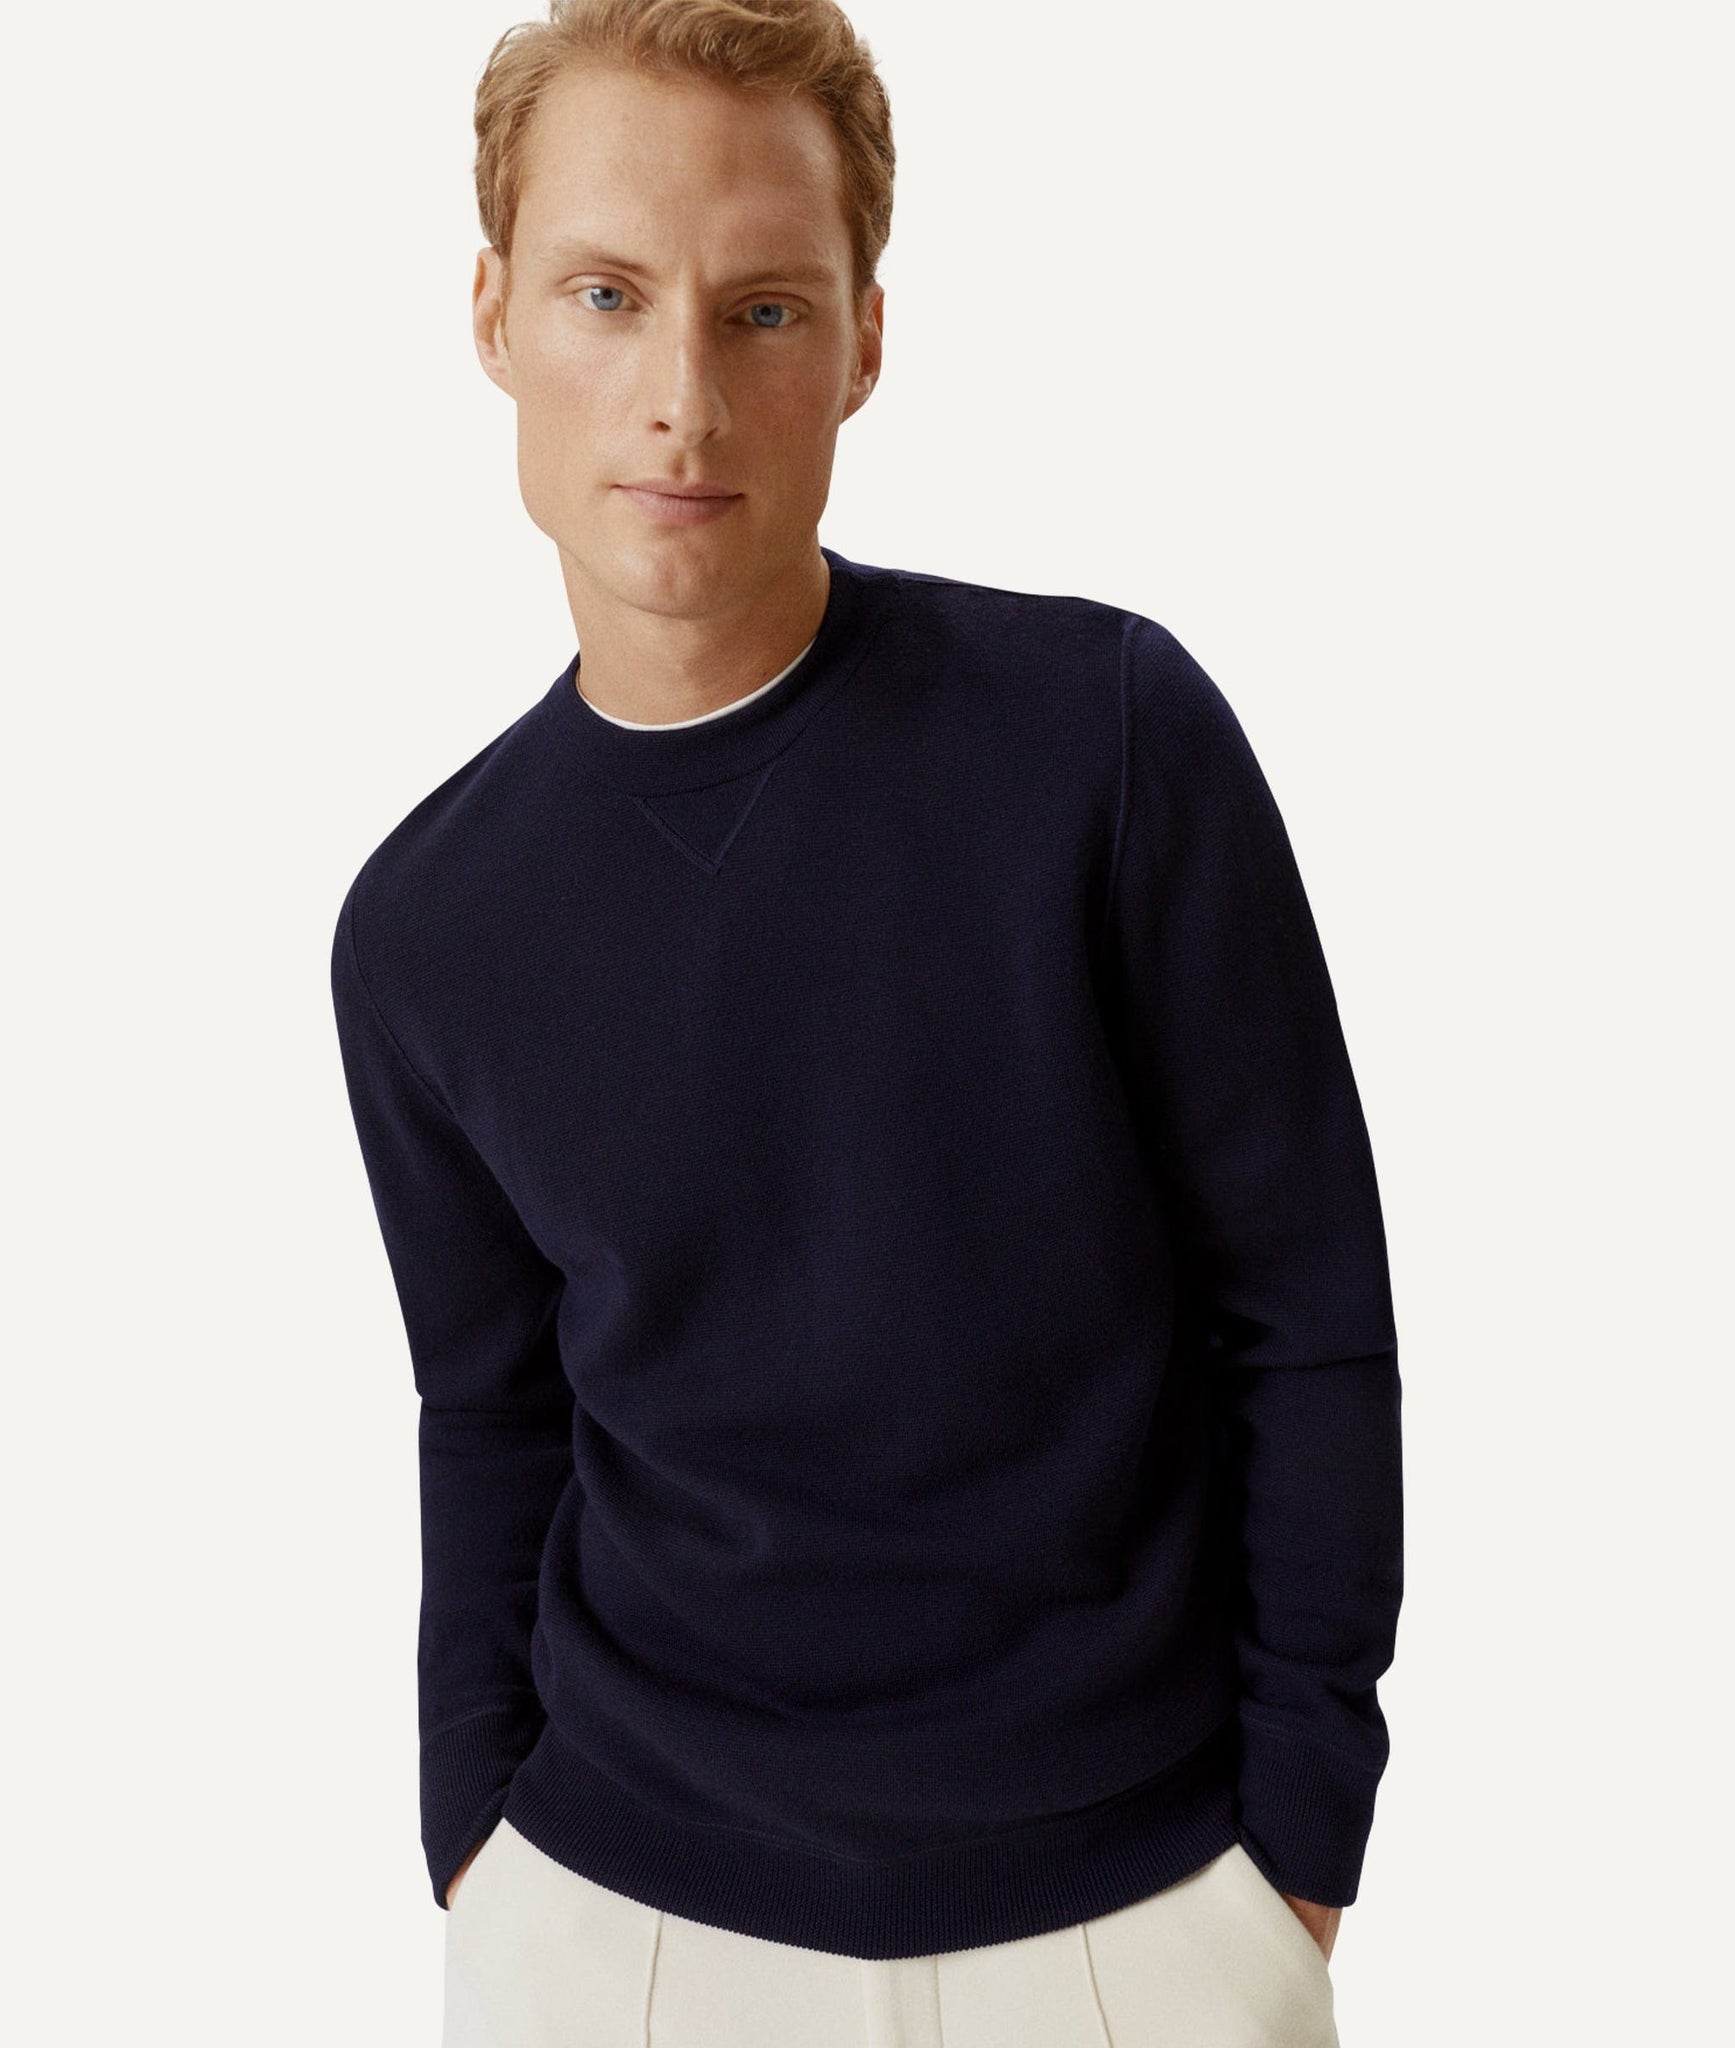 The Merino Wool Sweatshirt